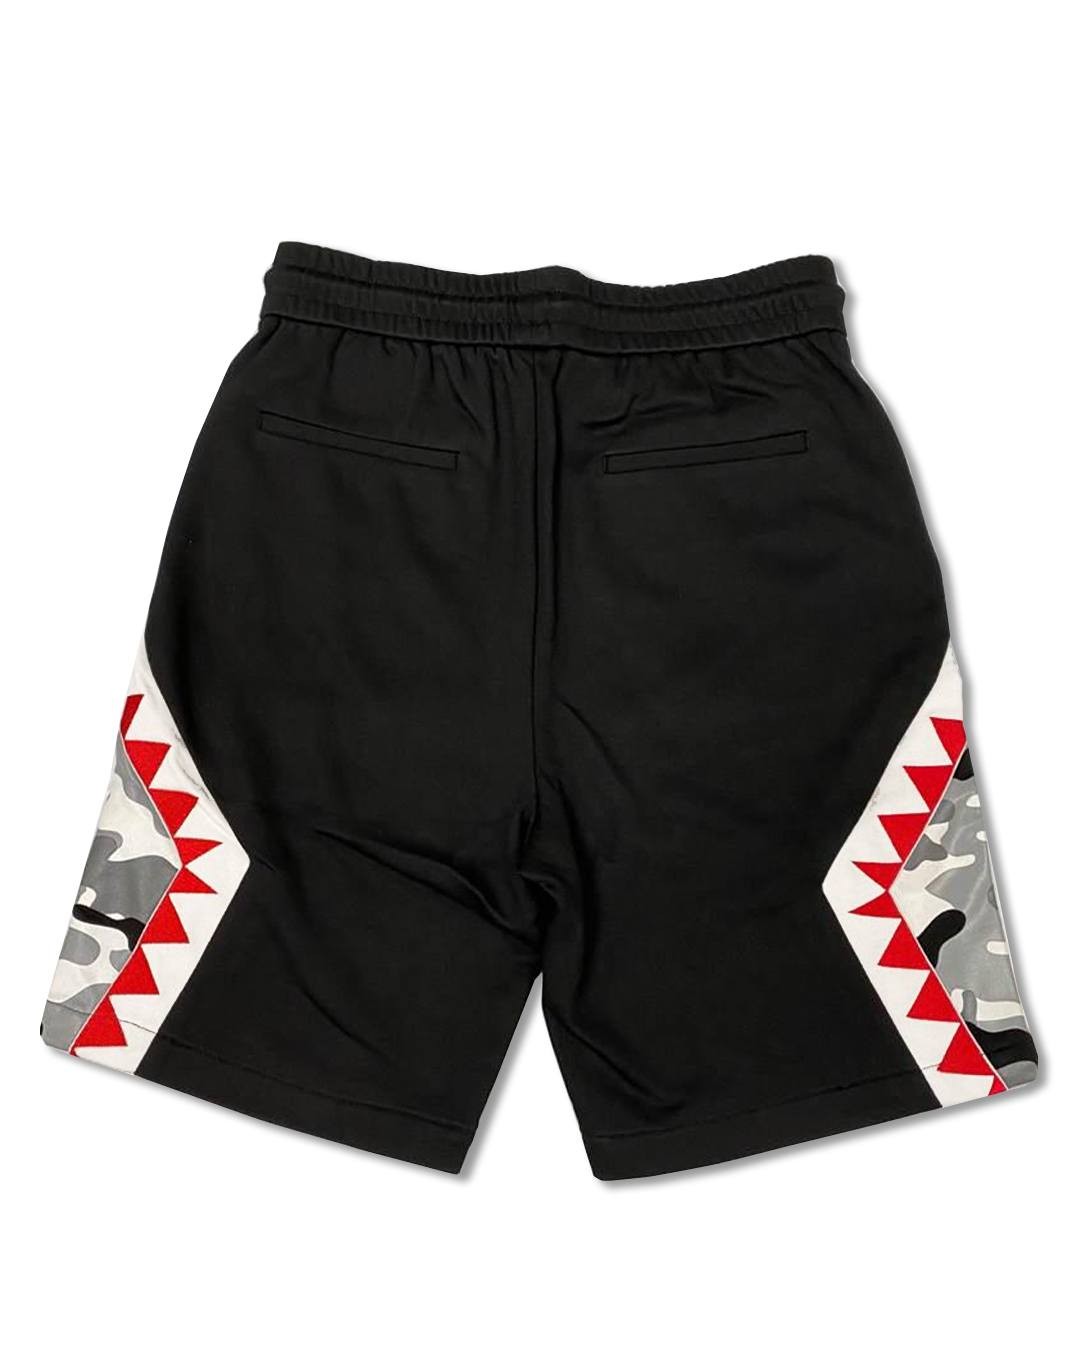 Discount | Shark Panamera Shorts Sprayground Sale - Discount | Shark Panamera Shorts Sprayground Sale-01-1